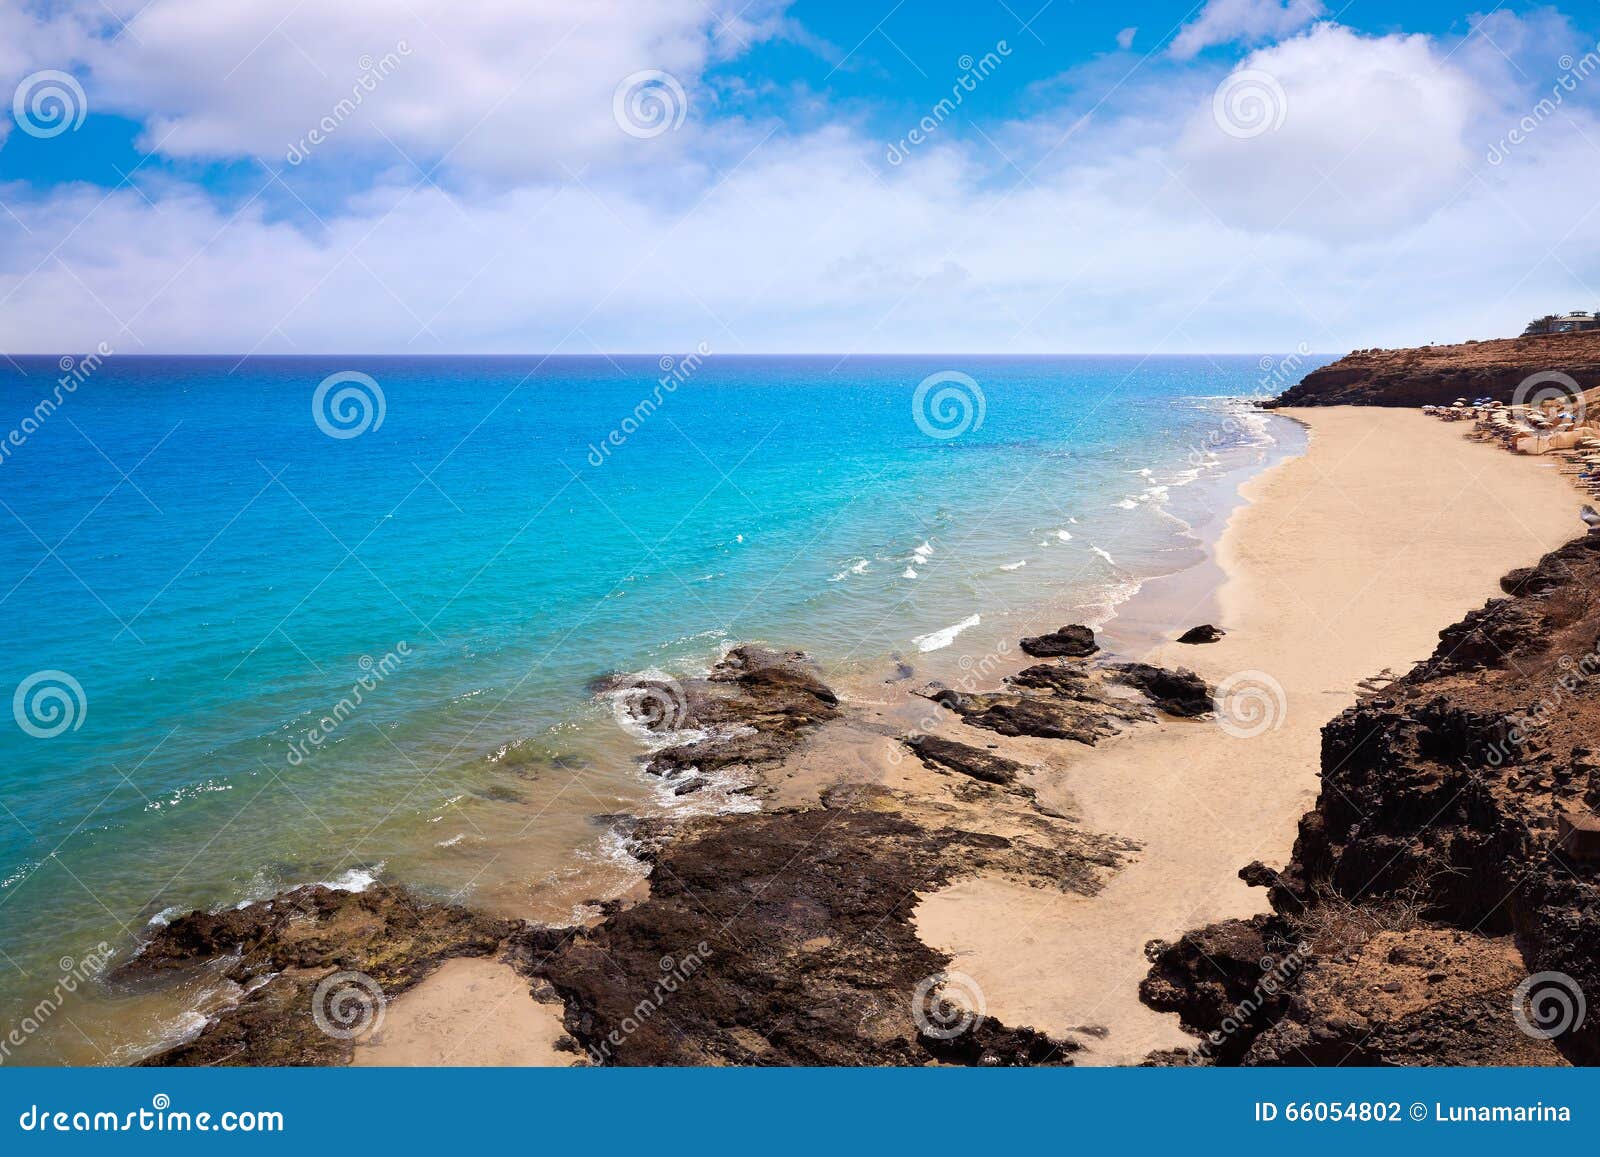 costa calma beach of jandia fuerteventura